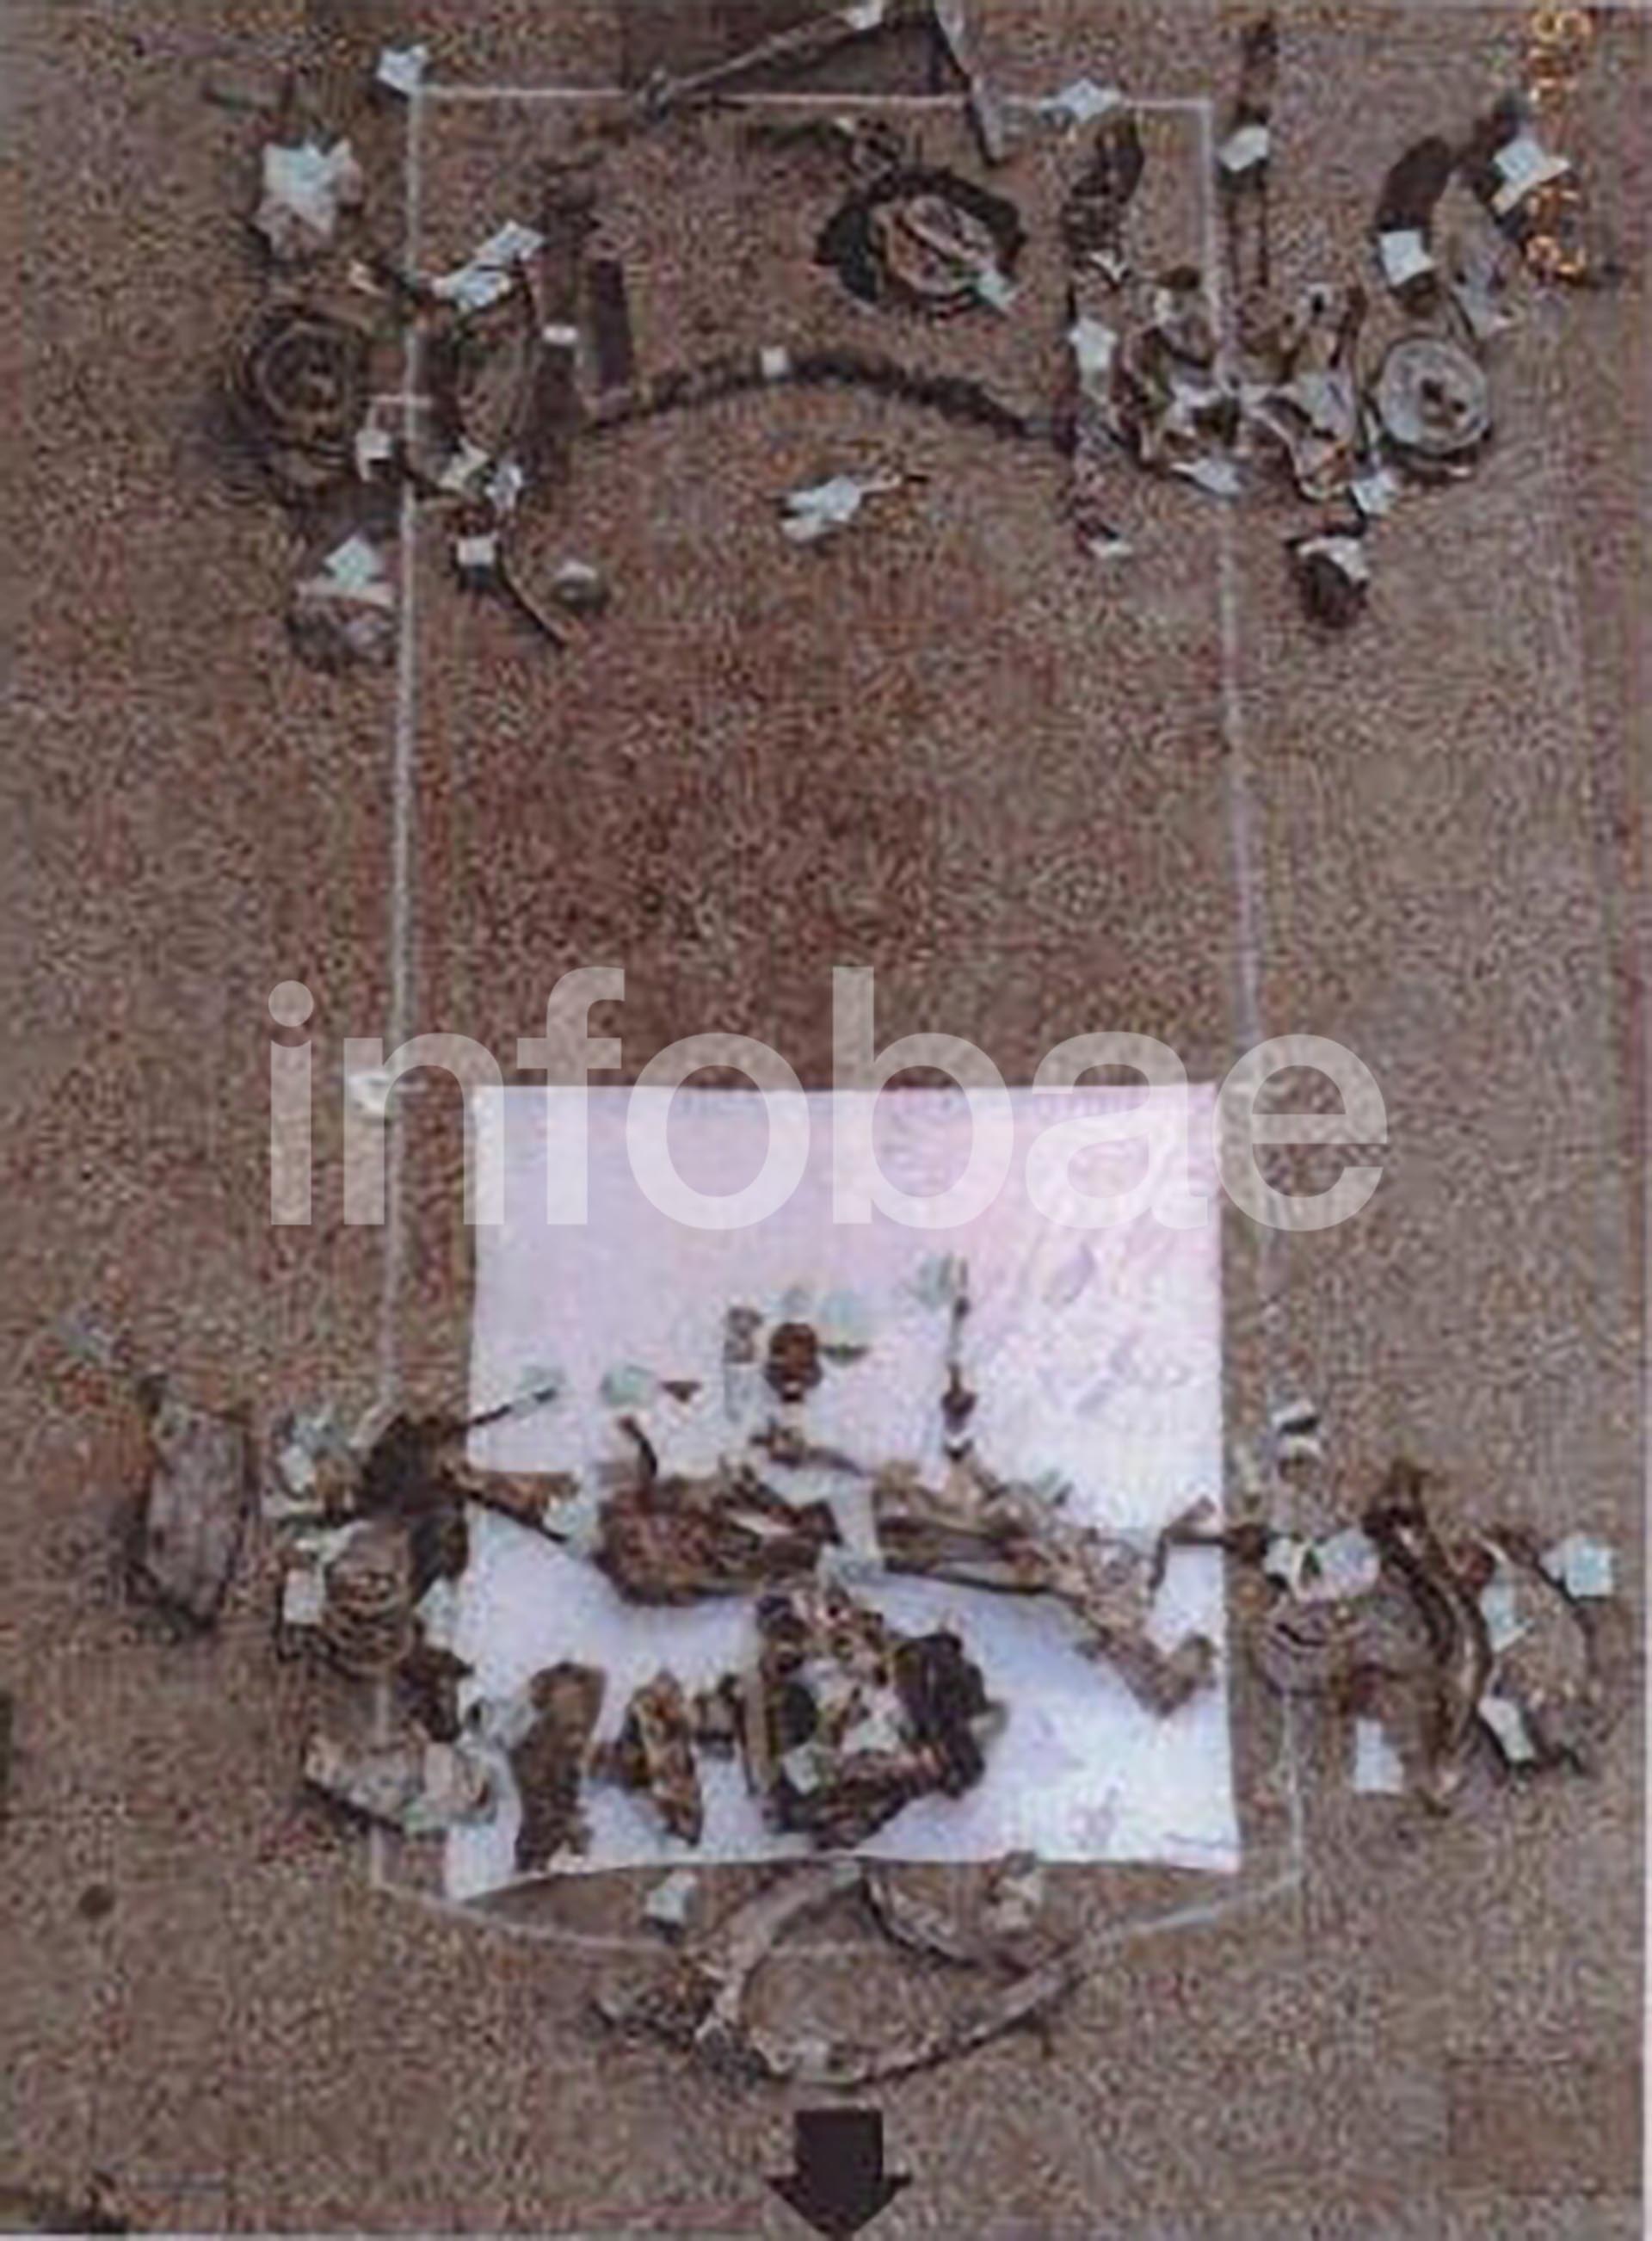 Fotografía incluida en el dossier del Mossad que muestra los restos de la camioneta-bomba encontrados entre los escombros de la embajada de Israel que Hezbollah voló por orden directa de Irán